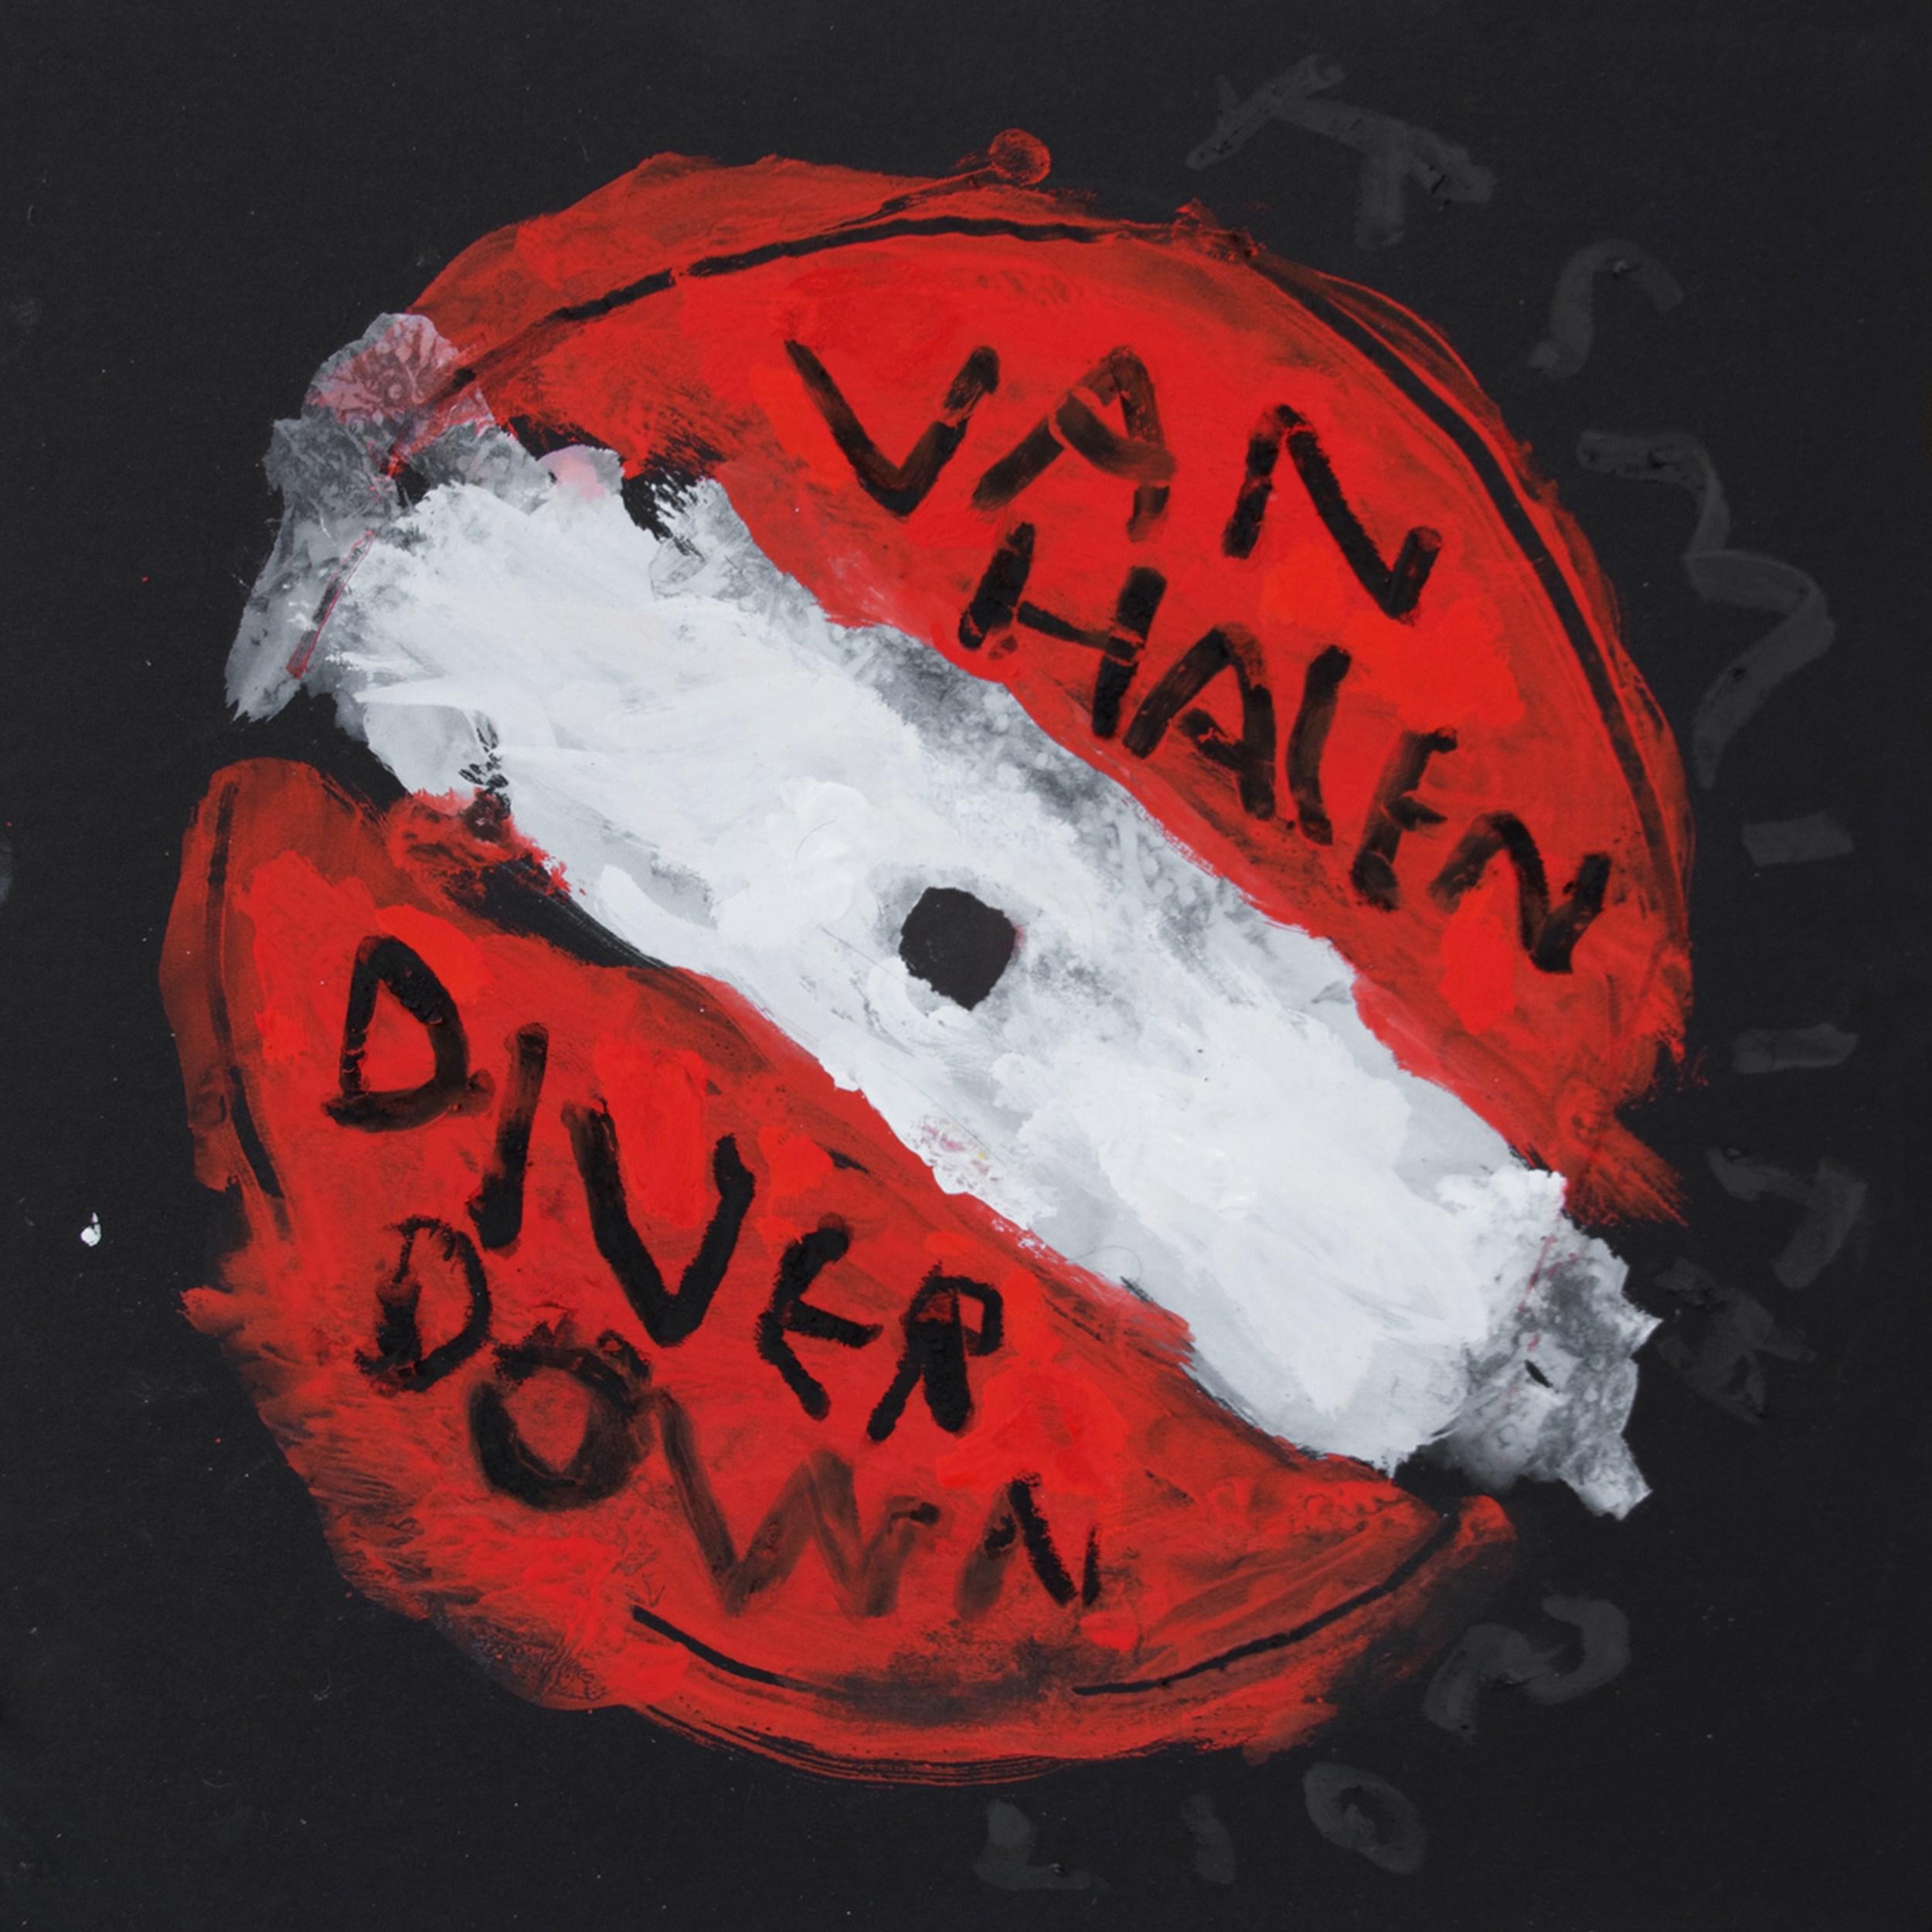 Van Halen - Diver Down (Record Label, Setlists, zeitgenössische Pop Art)